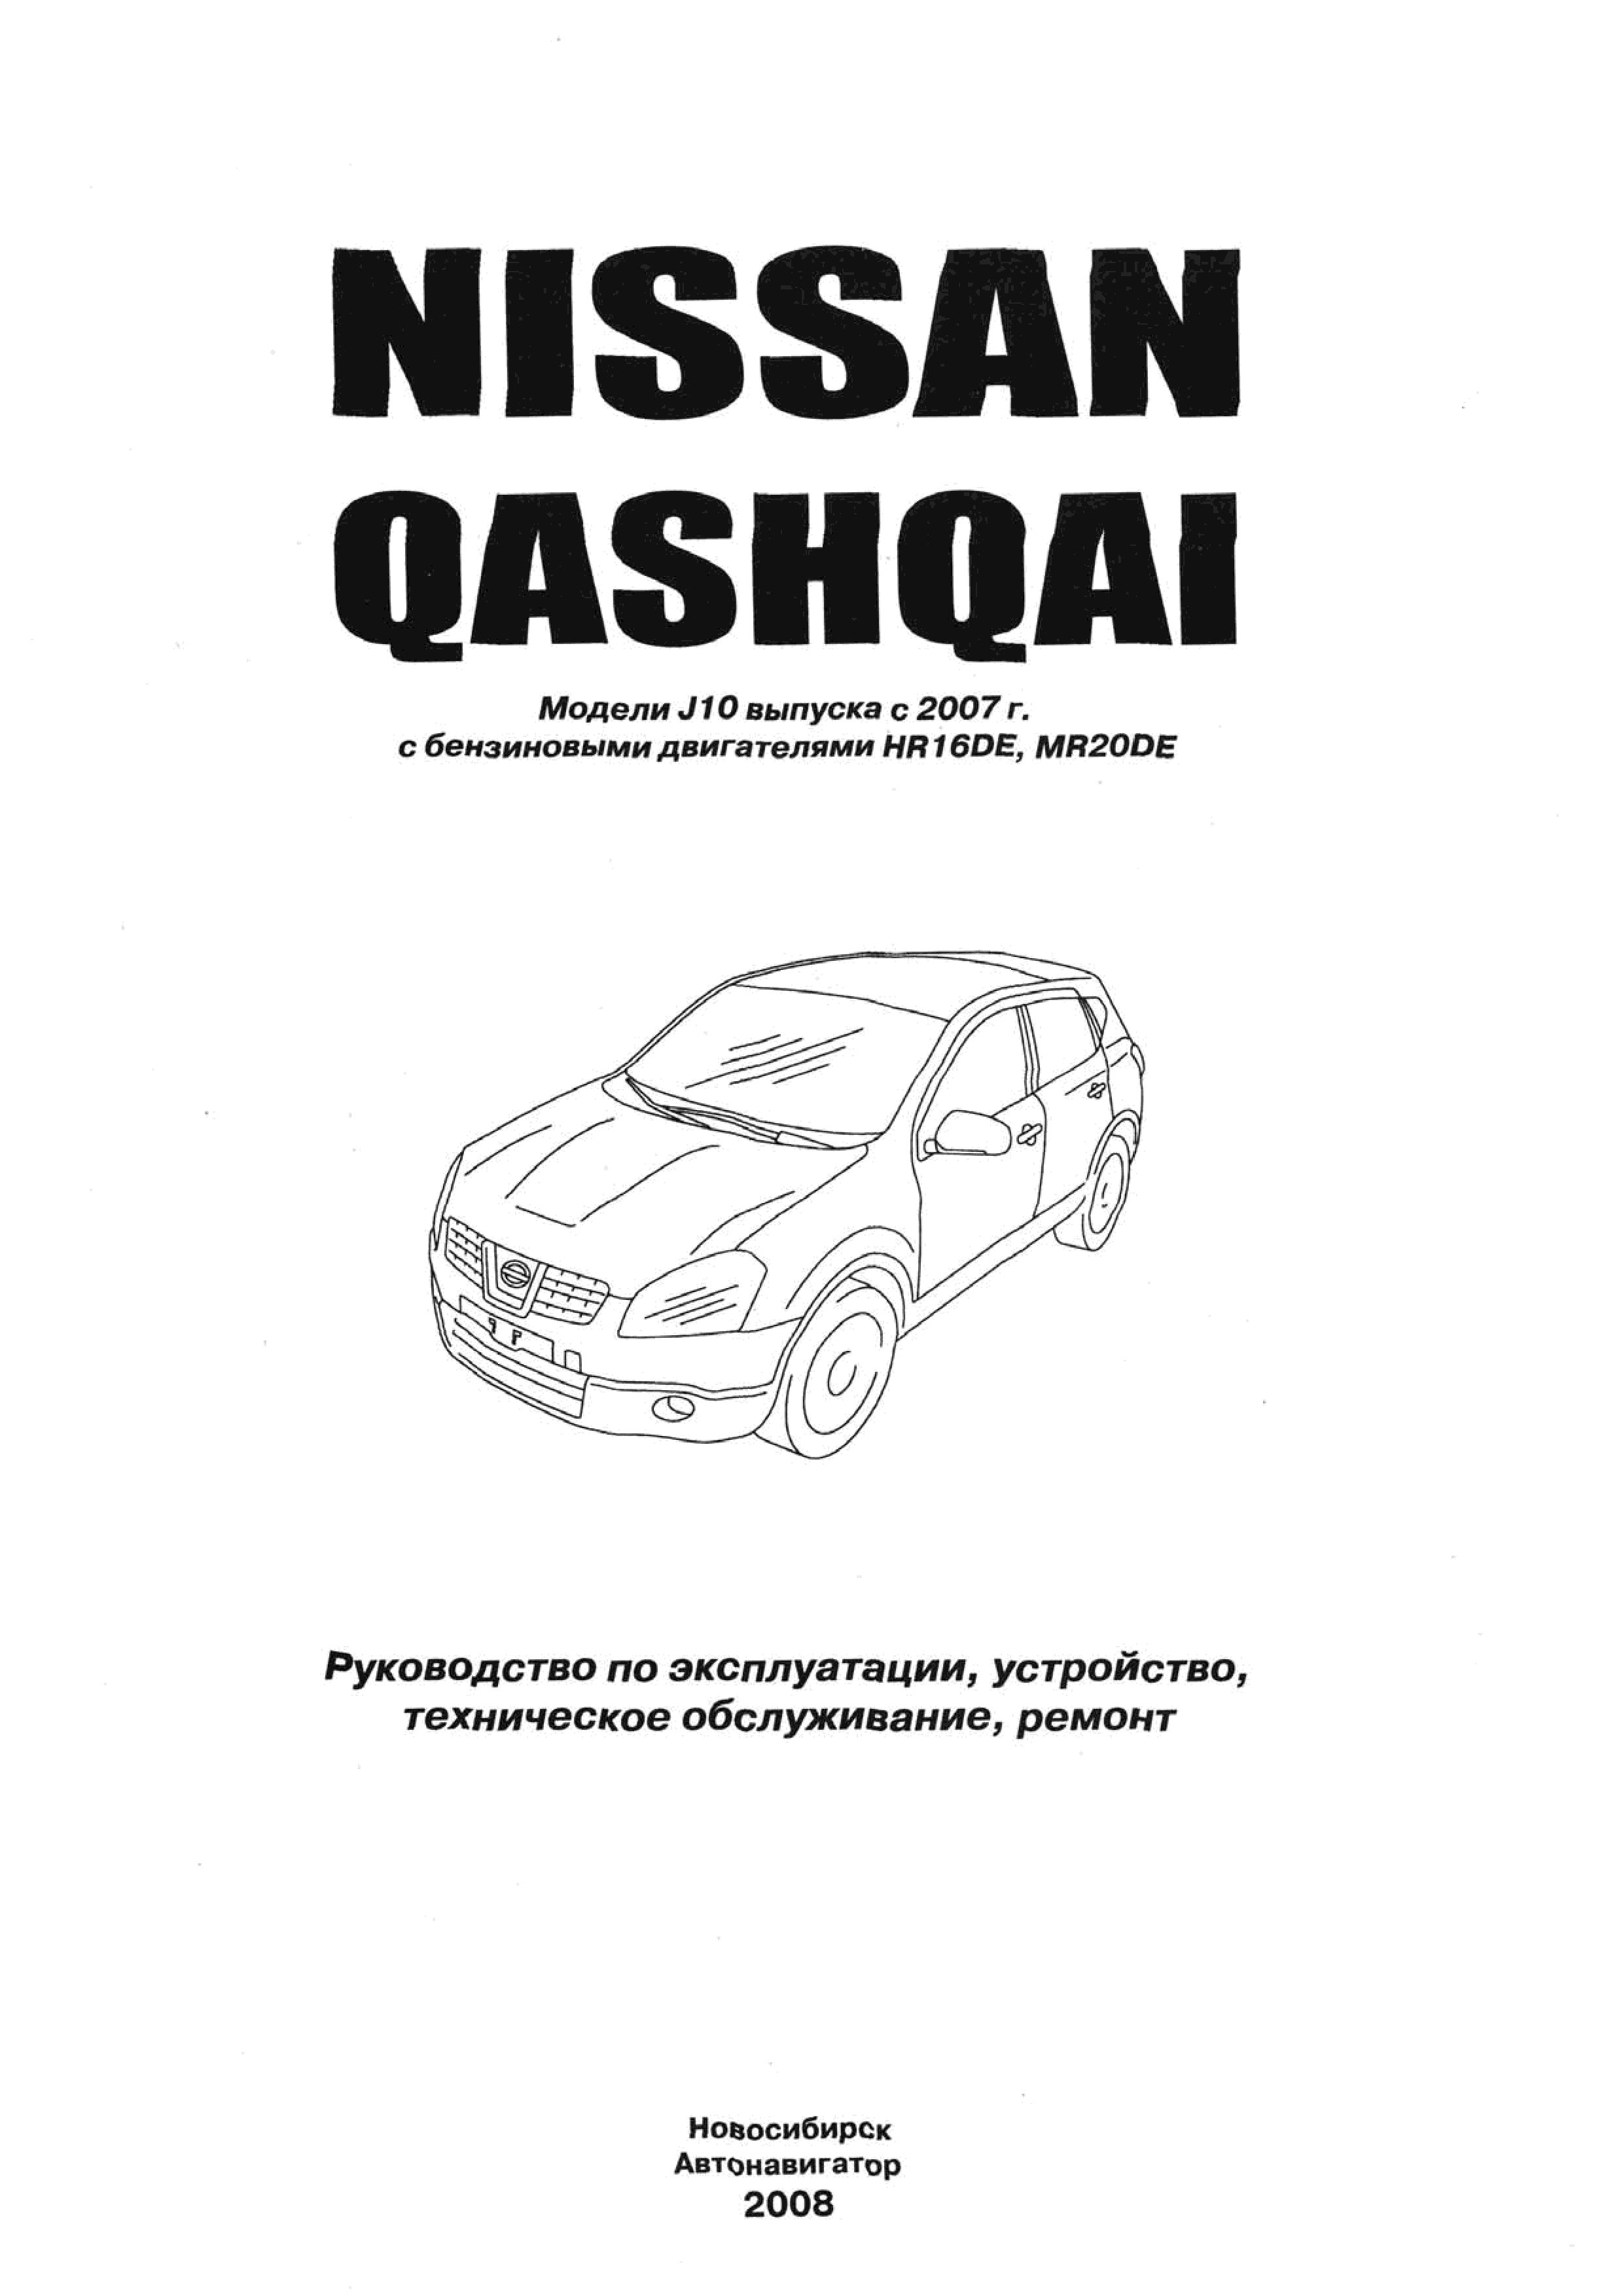 Ниссан Кашкай : ЦЕНТРАЛЬНЫЙ ЭЛЕКТРИЧЕСКИЙ ЗАМОК ДВЕРЕЙ Nissan Qashqai У нас есть все фото и схемы необходимые для ремонта Полный мануал по ремонту и обслуживанию авто